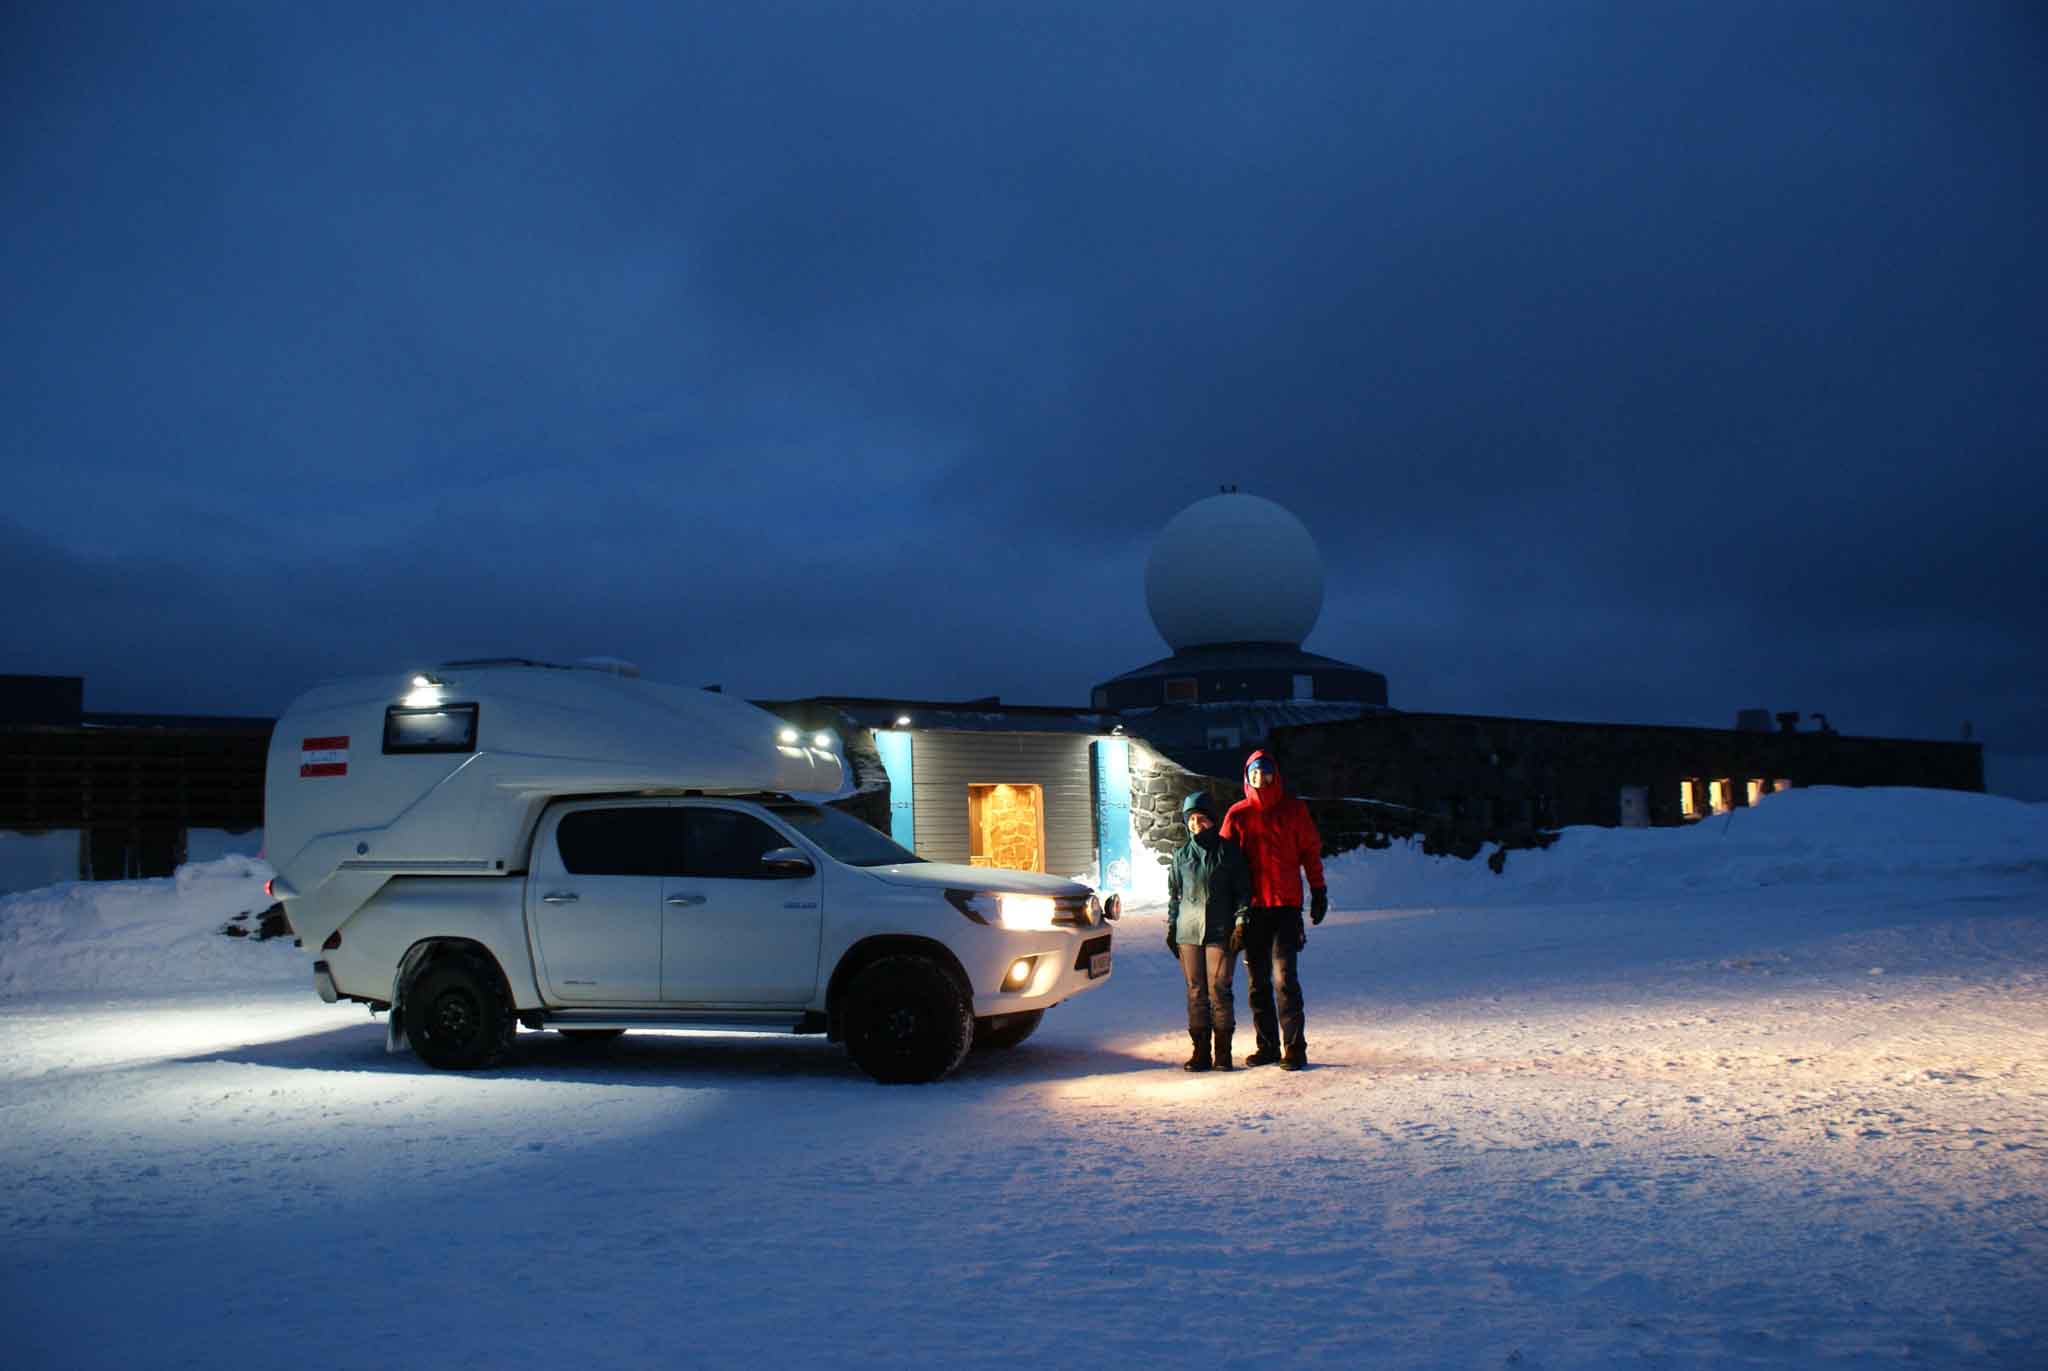 Eine Toyota Hilux Wohnkabine der Marke geocar am norwegischem Nordkap